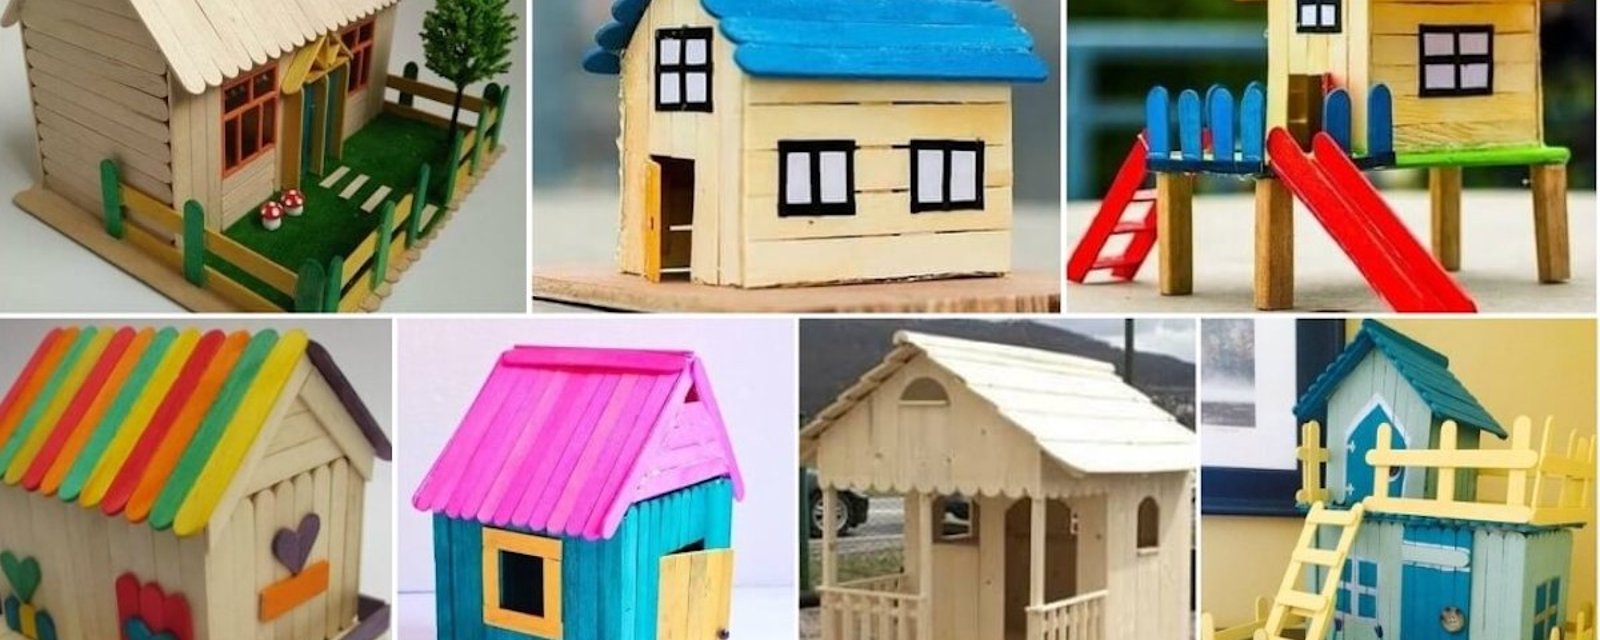 10 modèles de maisons en bâtons de popsicles pour inspirer vos bricolages